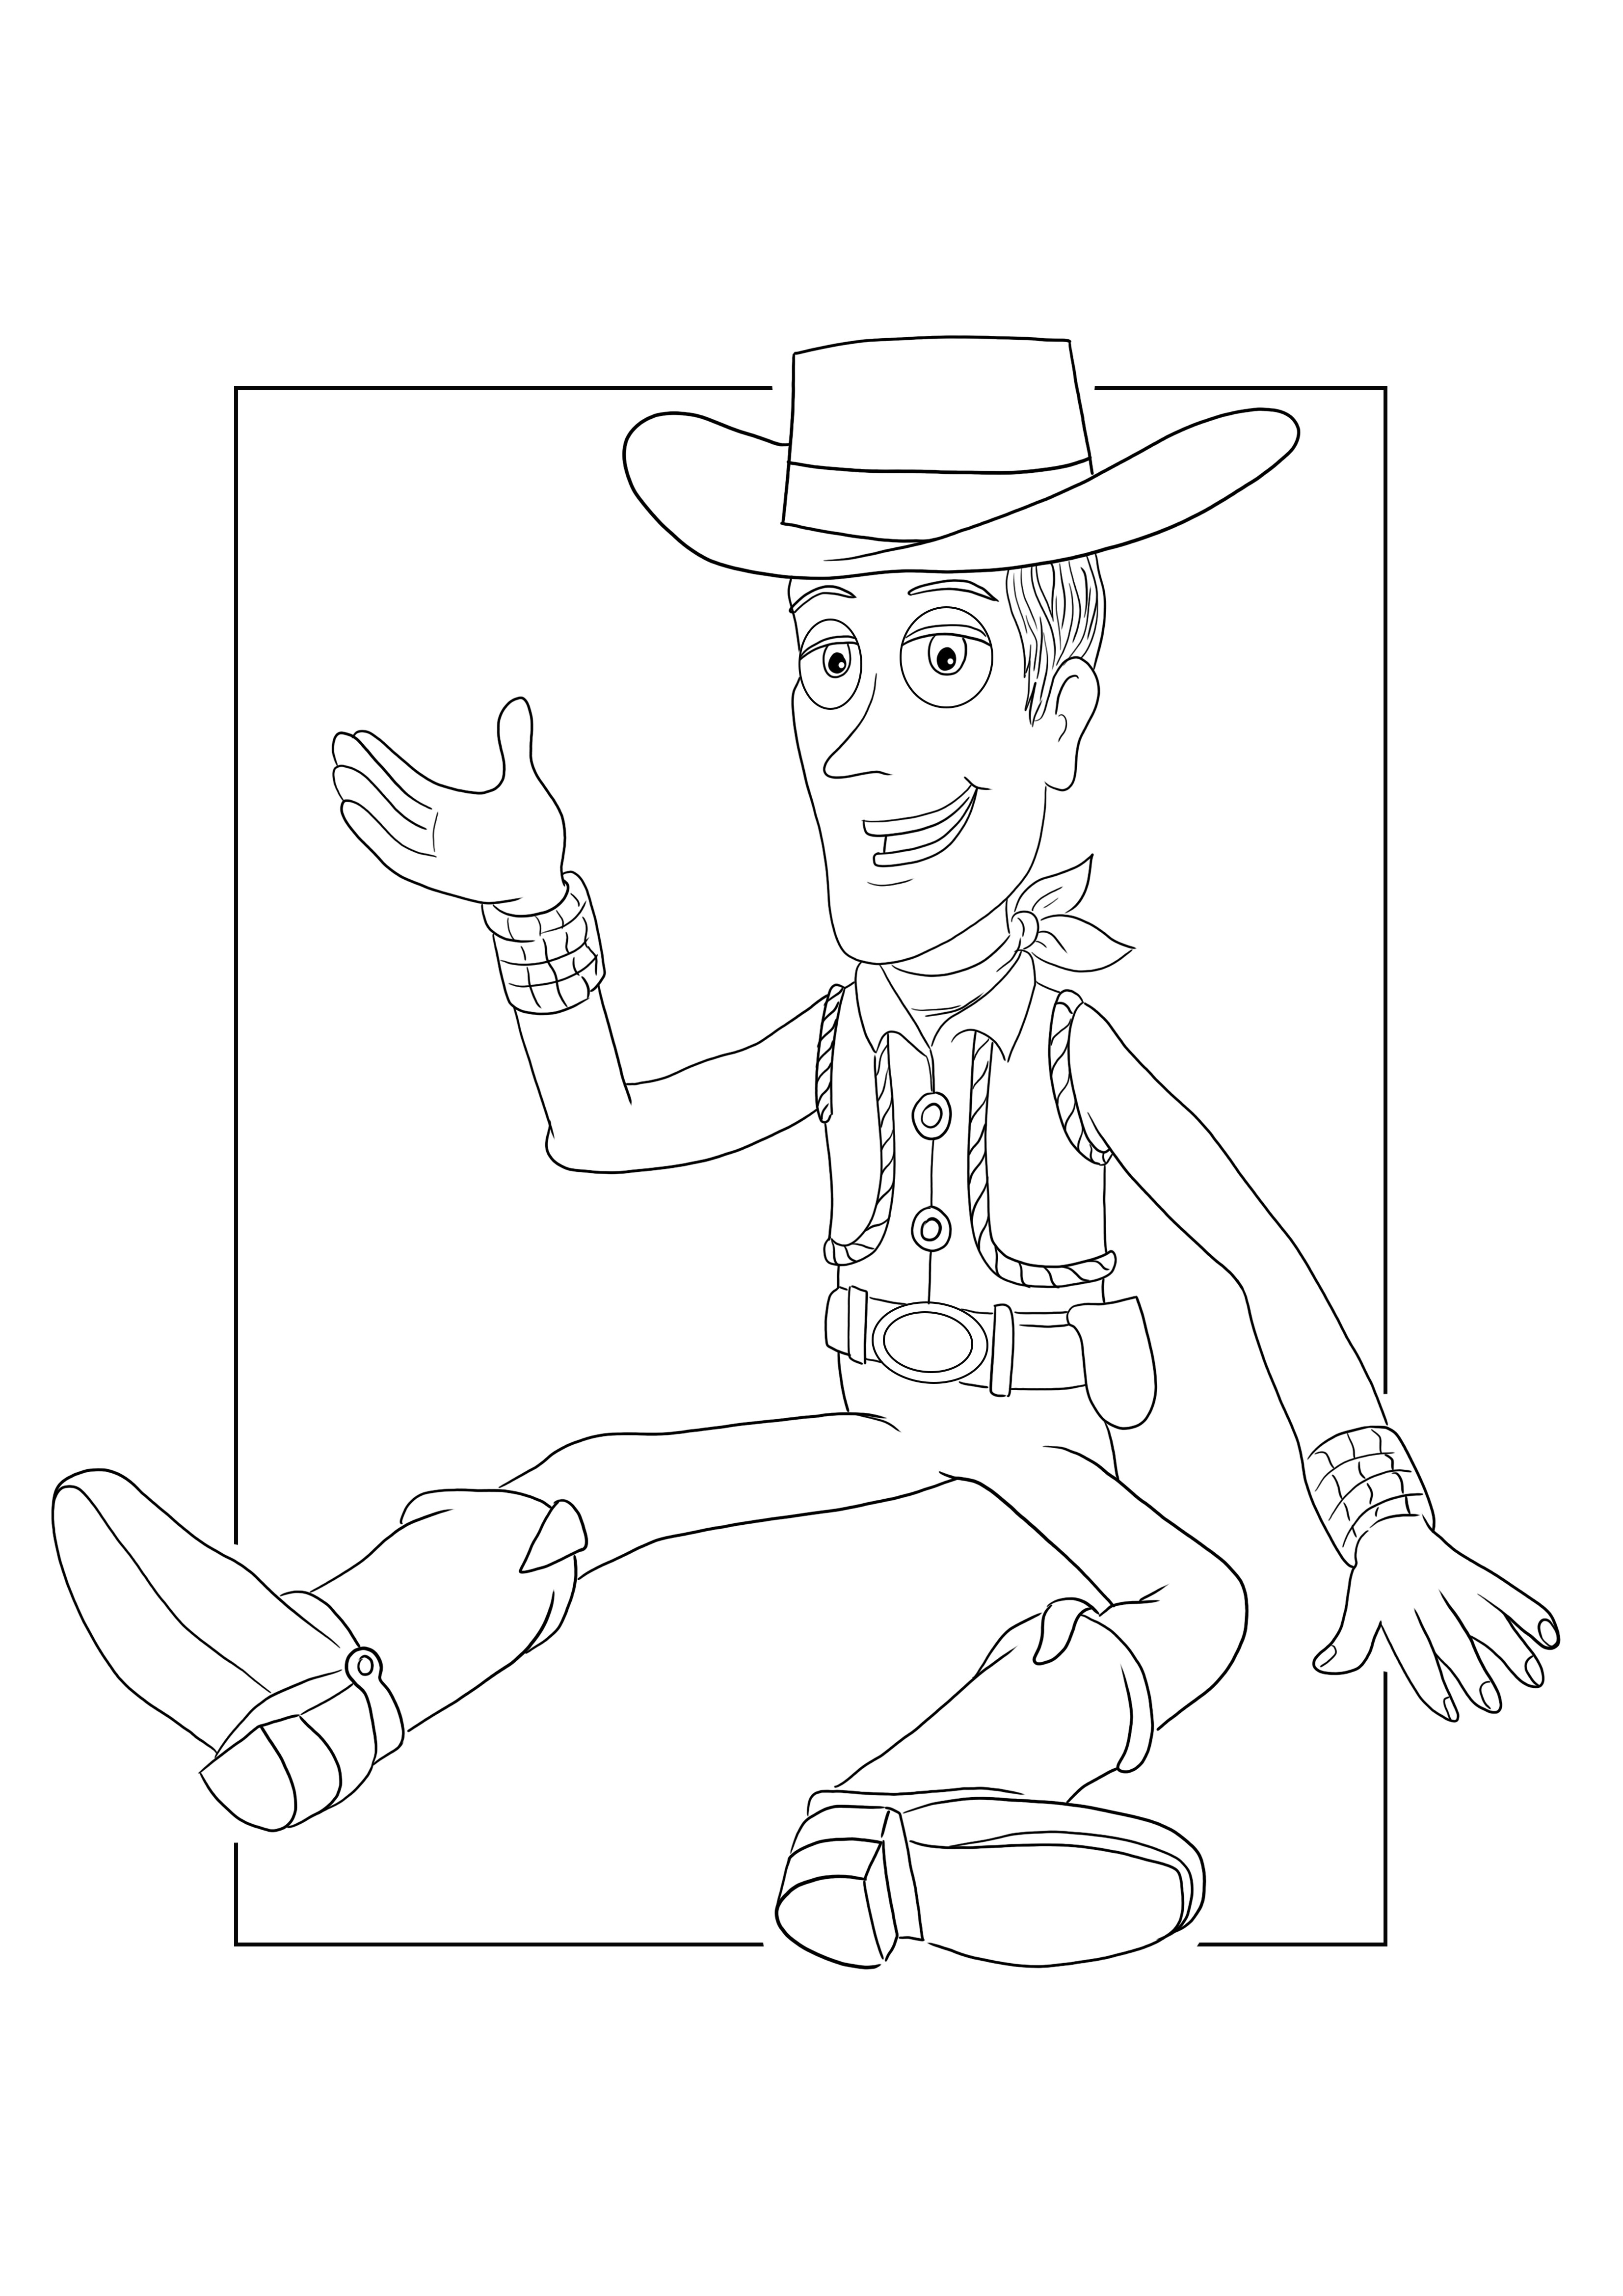 Sheriff Woody para colorear e imprimir una hoja gratis para niños